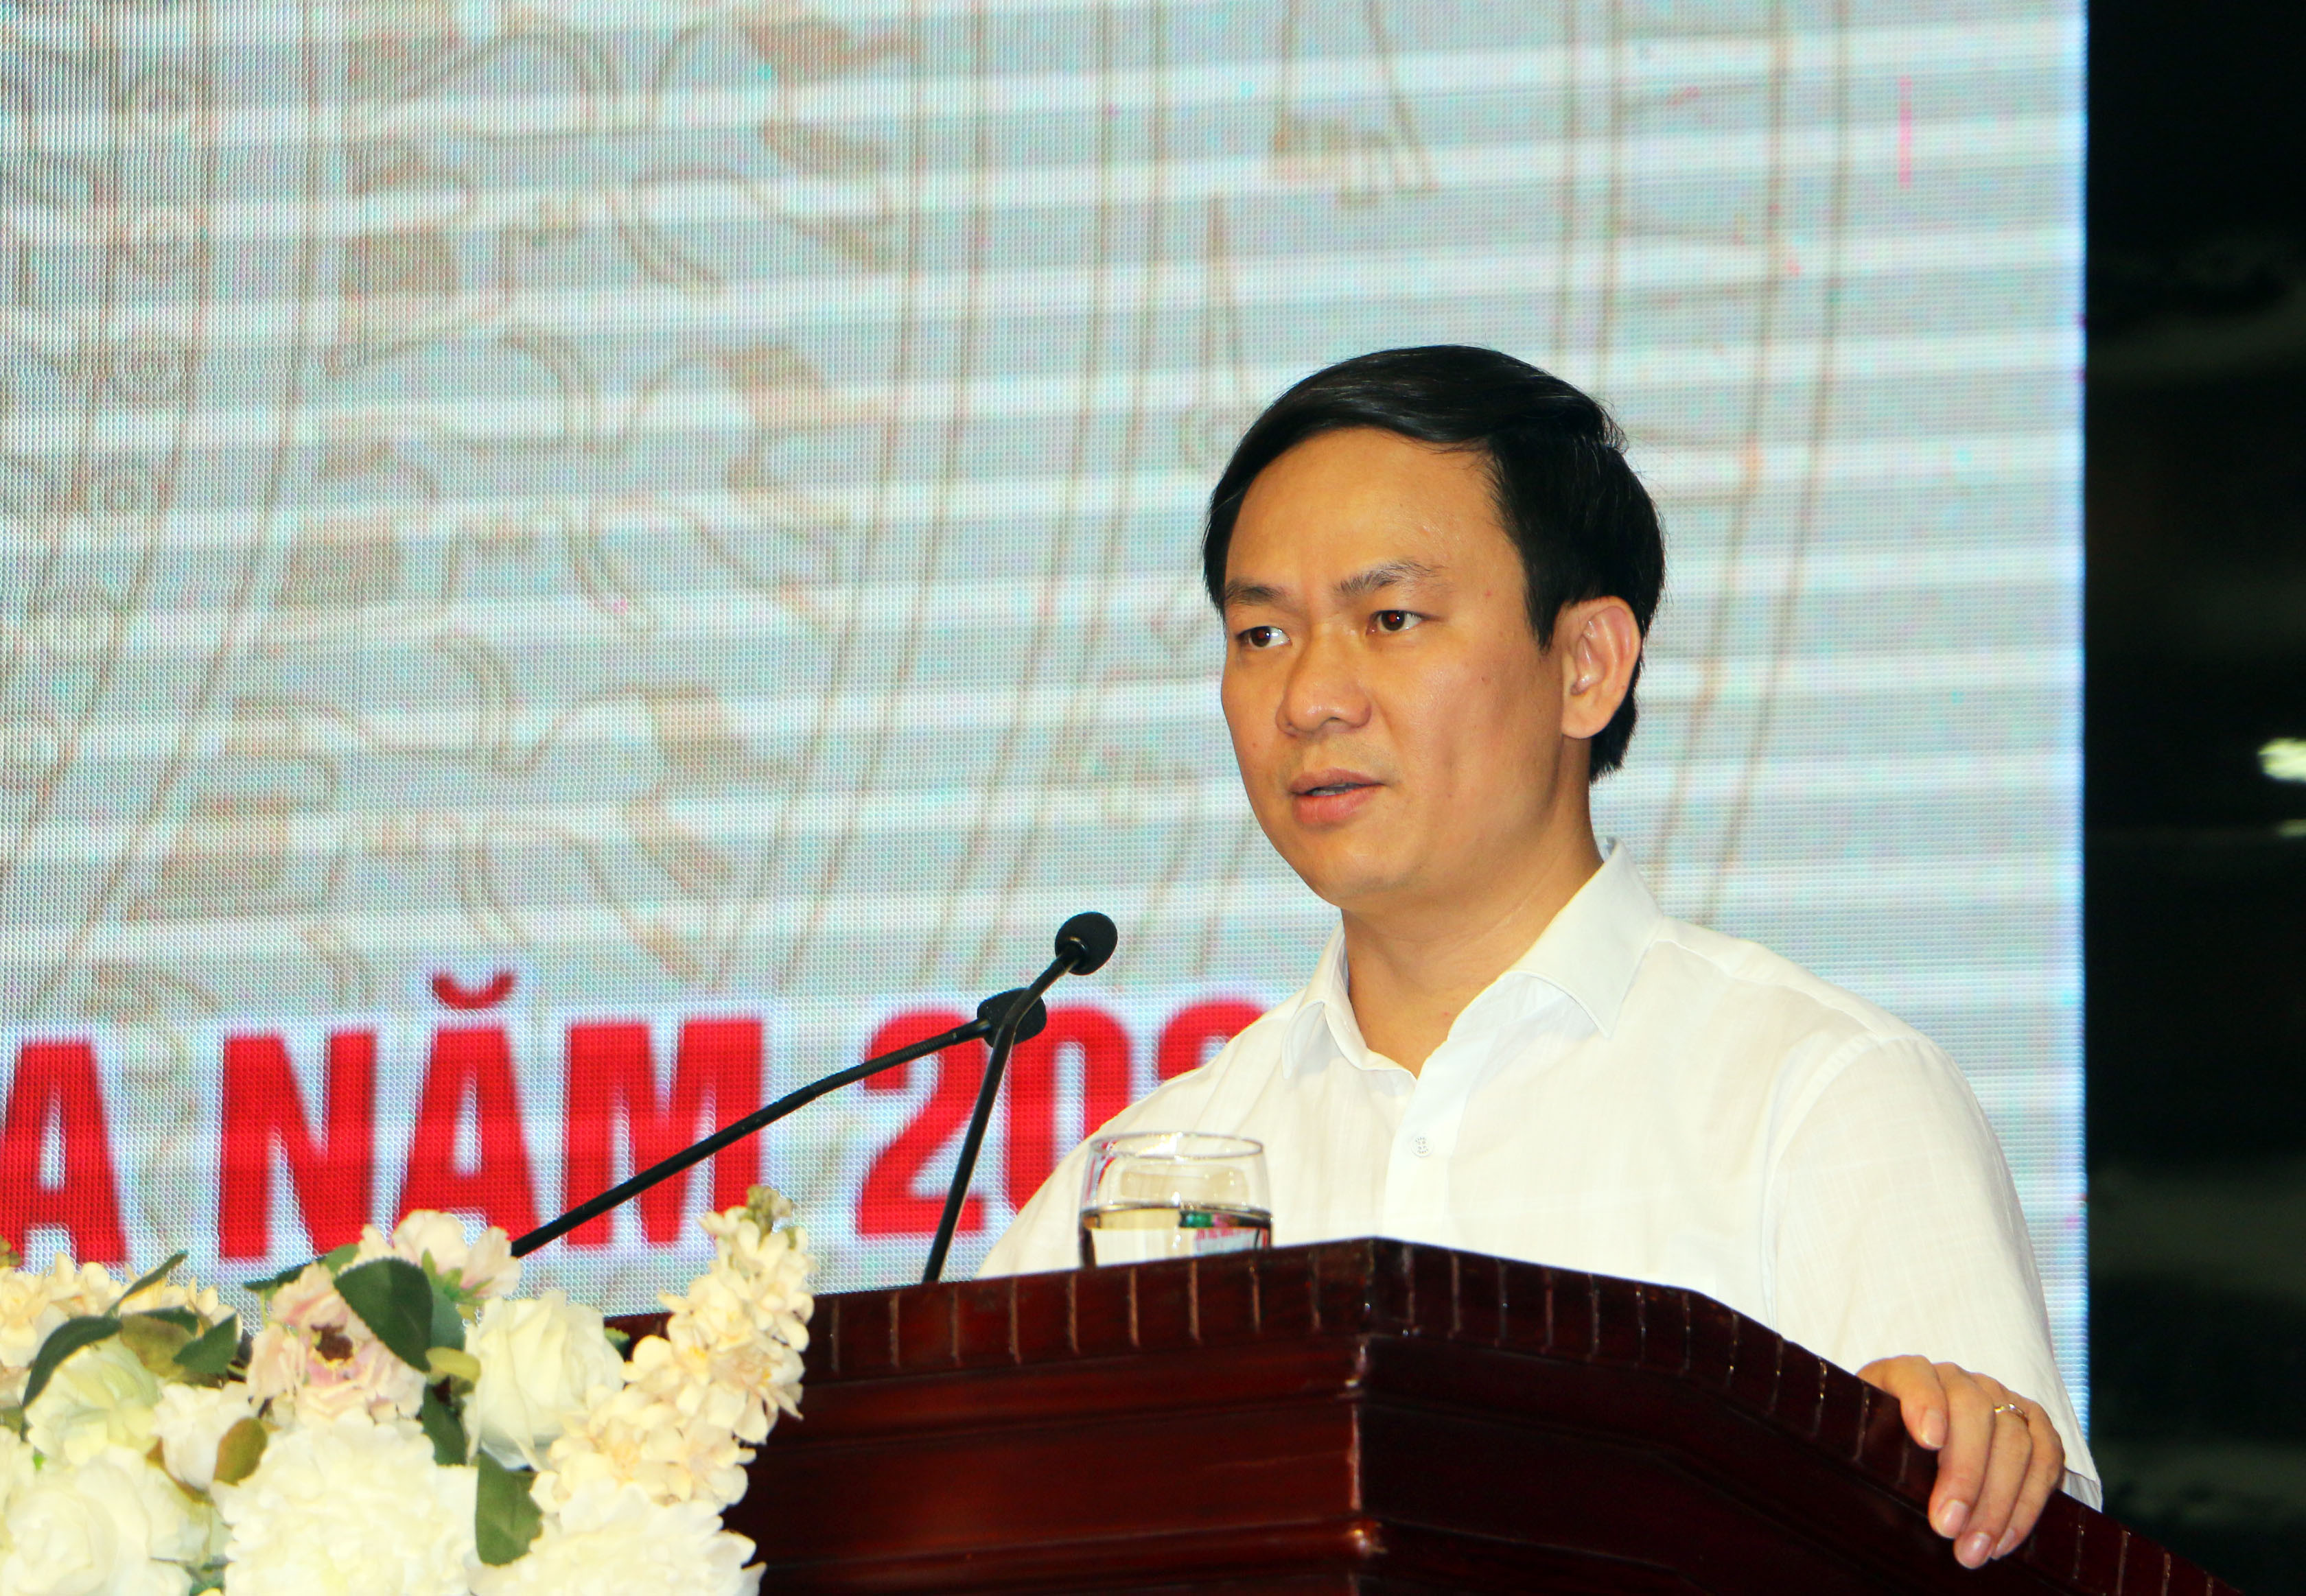 Đồng chí Trần Văn Long, Phó Vụ trưởng Vụ Pháp chế - Thanh tra Chính phủ phát biểu chỉ đạo tại Hội nghị. Ảnh: An Quỳnh.